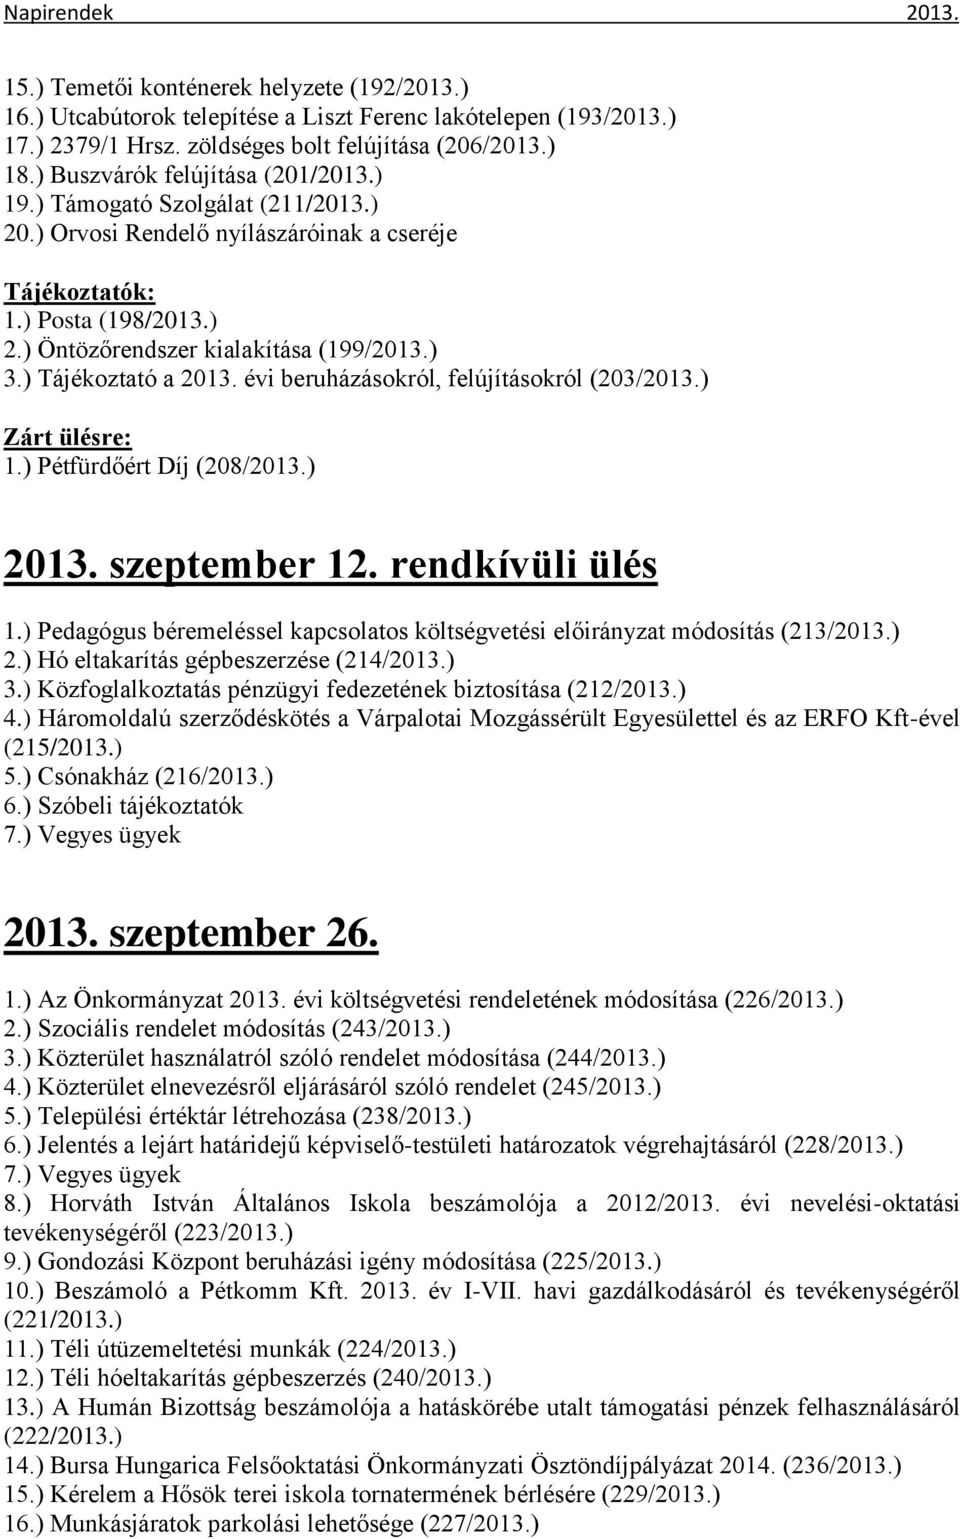 ) Tájékoztató a 2013. évi beruházásokról, felújításokról (203/2013.) 1.) Pétfürdőért Díj (208/2013.) 2013. szeptember 12. rendkívüli ülés 1.